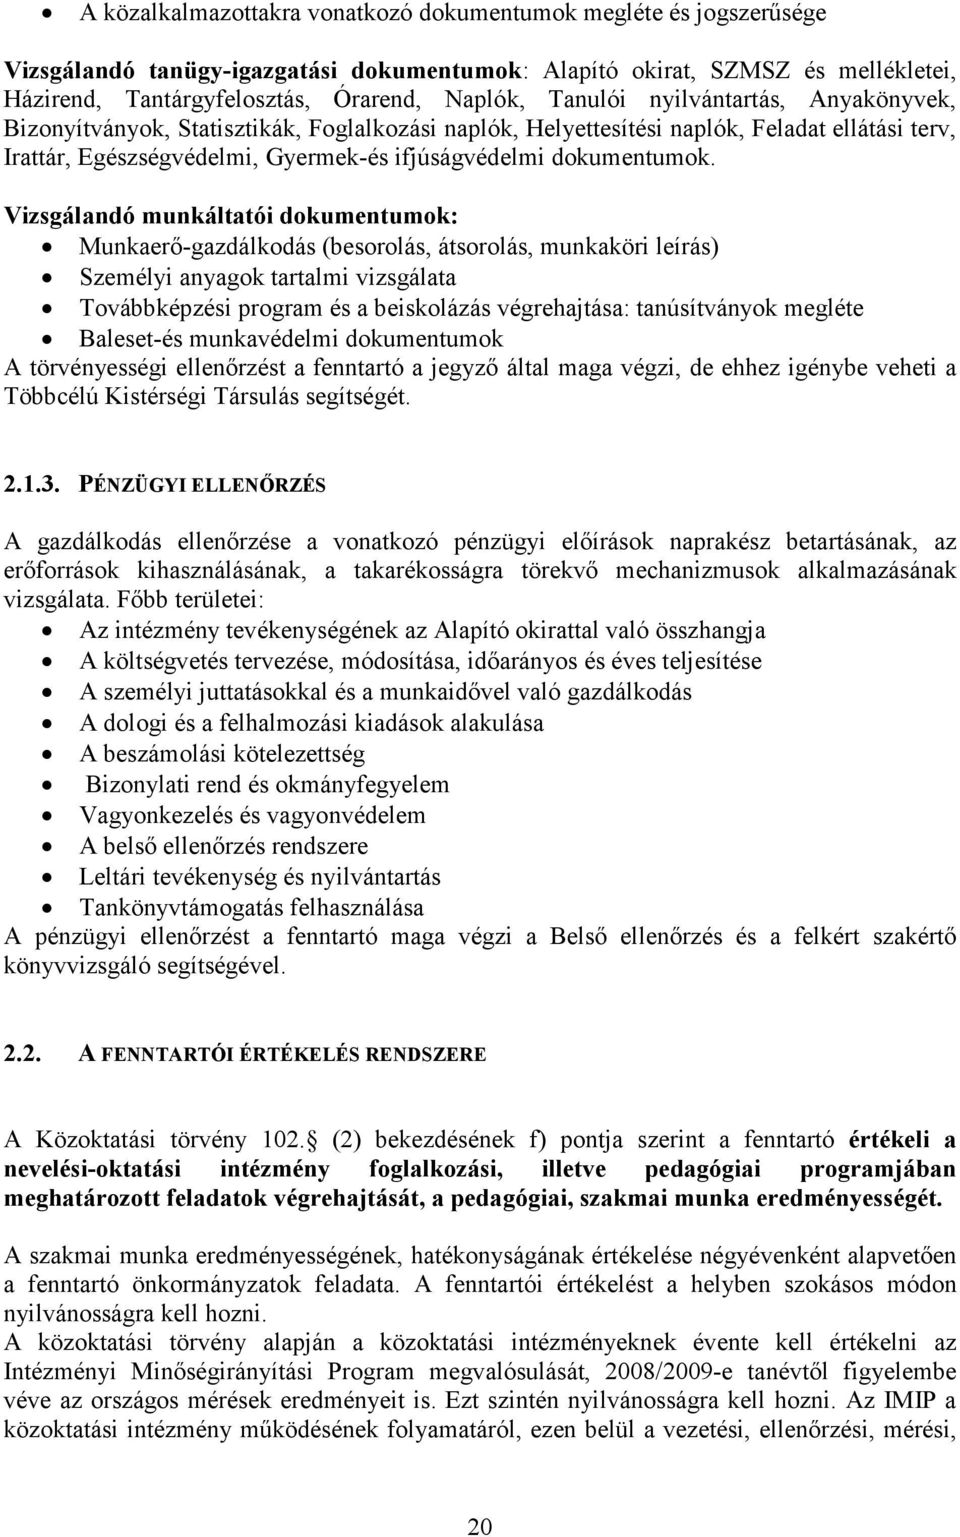 Vizsgálandó munkáltatói dokumentumok: Munkaerı-gazdálkodás (besorolás, átsorolás, munkaköri leírás) Személyi anyagok tartalmi vizsgálata Továbbképzési program és a beiskolázás végrehajtása: